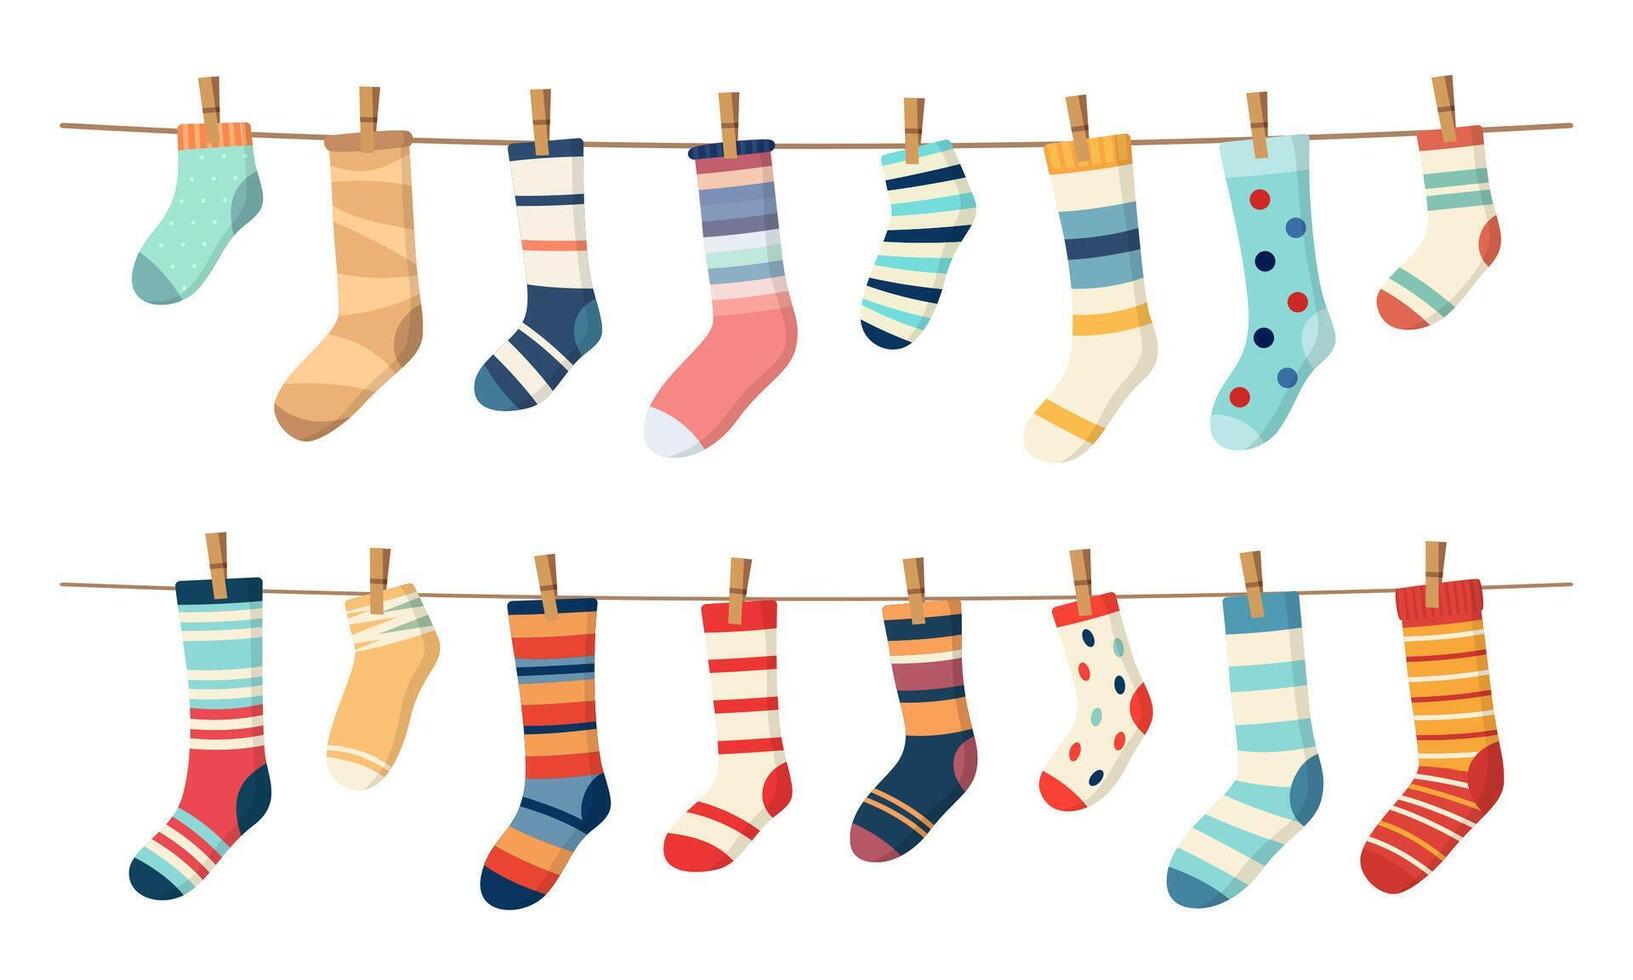 Socken auf Wäscheleine, Baumwolle oder wolle Socken auf Seil vektor